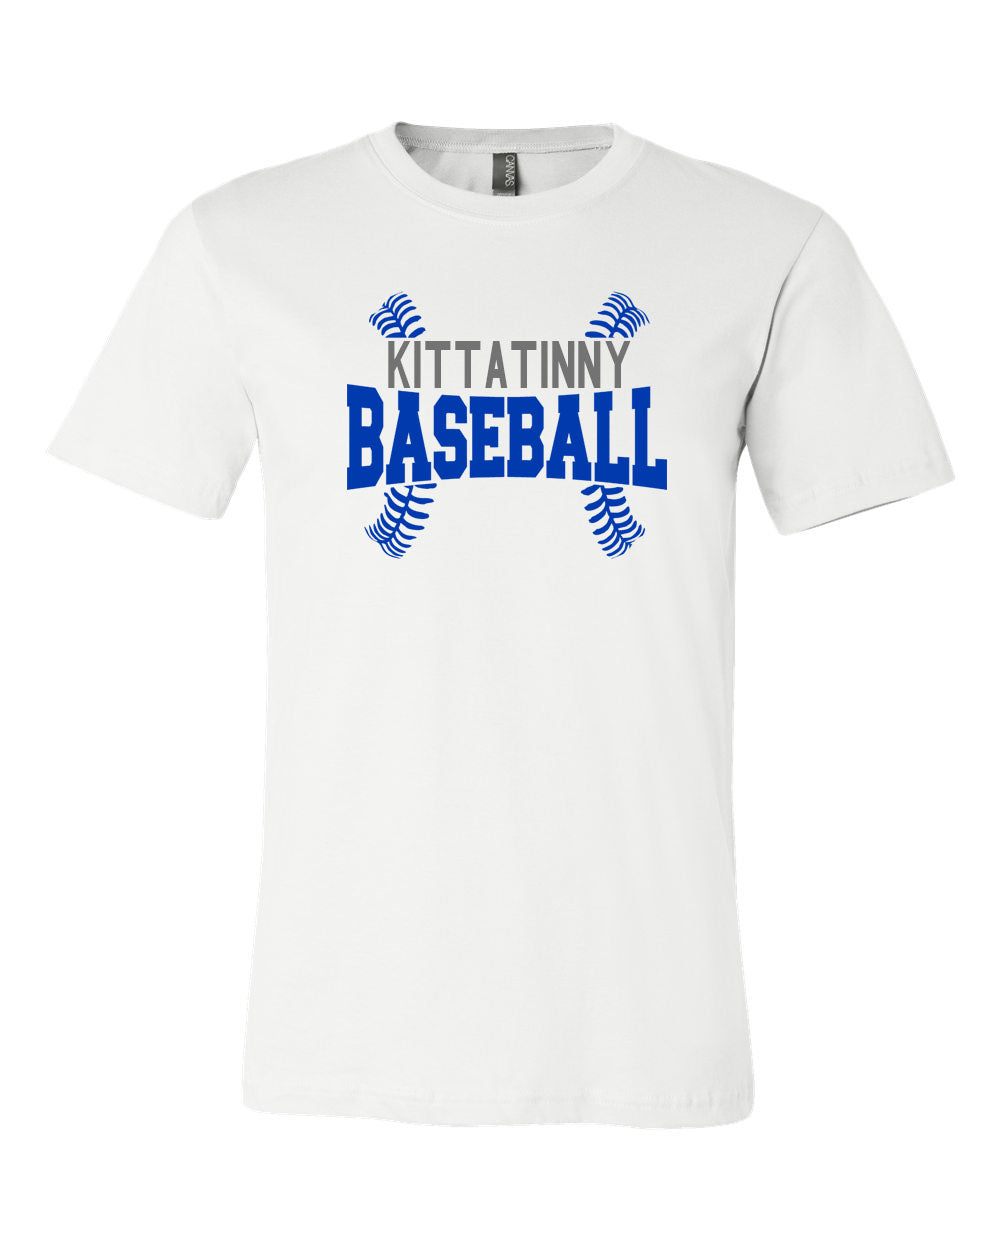 Kittatinny Baseball t-Shirt